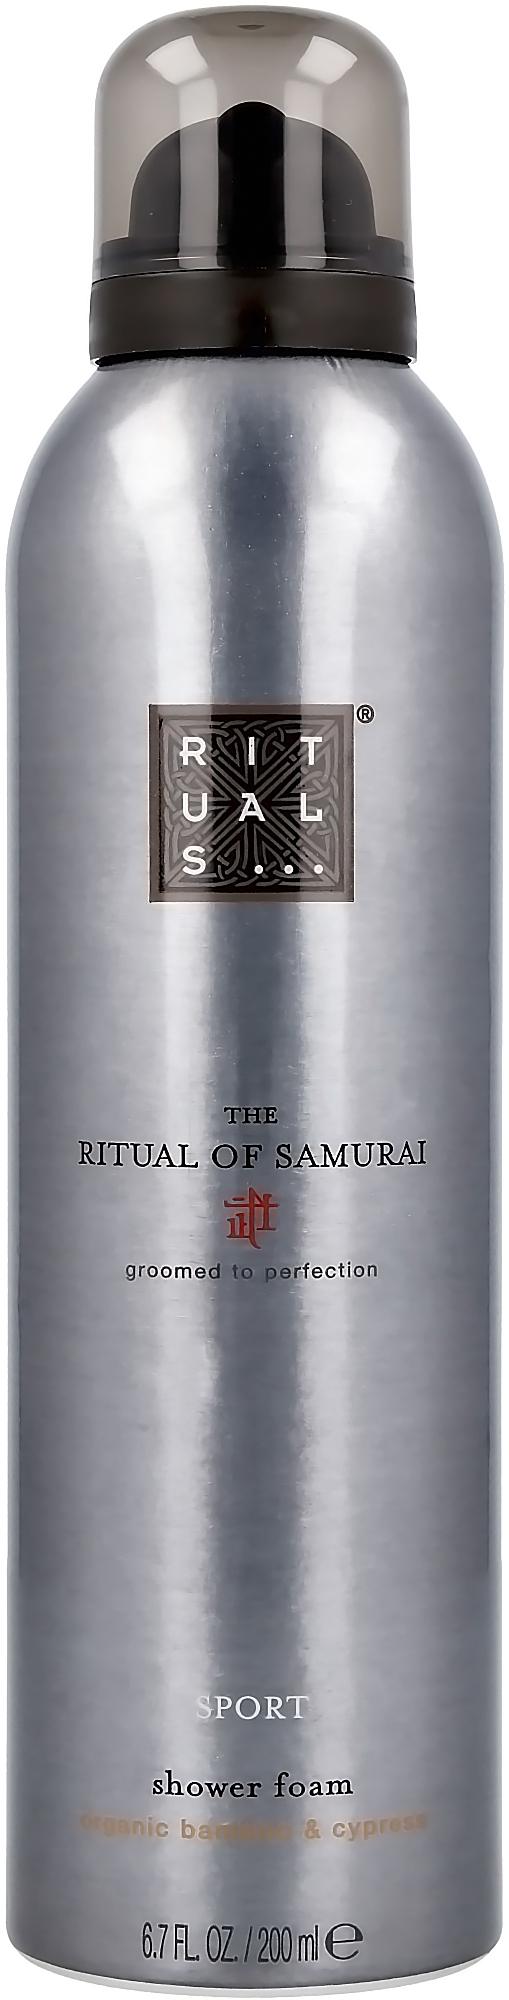 Shower foam sport - The Ritual of Samurai - Rituals